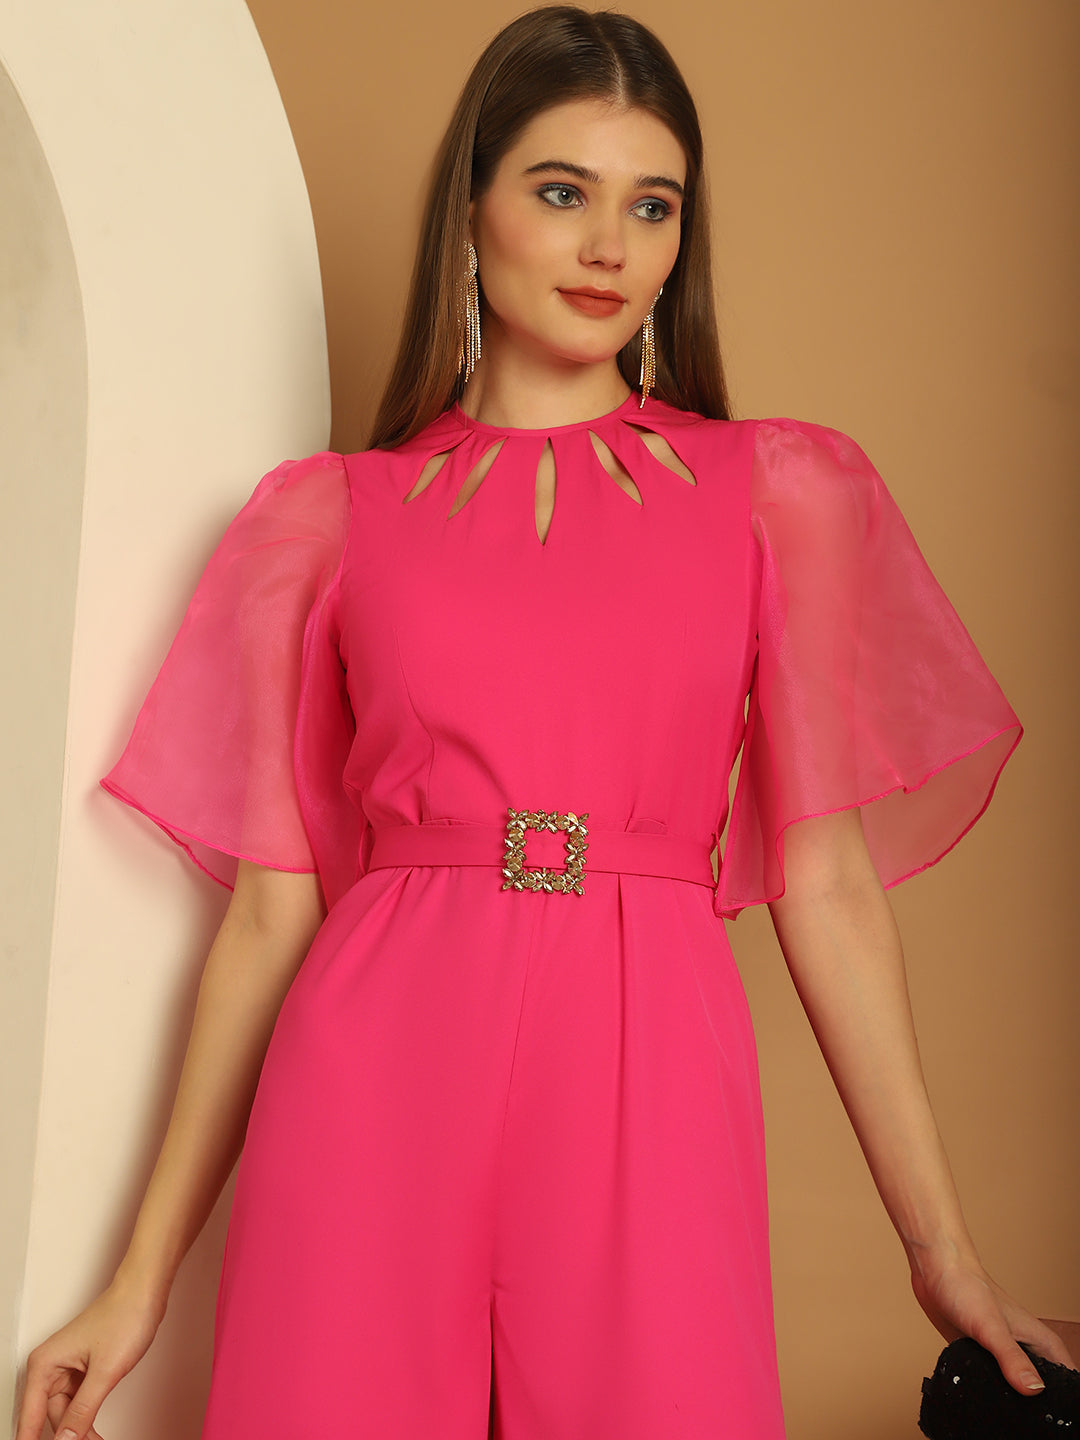 BLANC9 Cut-Out Neckline Pink Jumpsuit-B9JS03